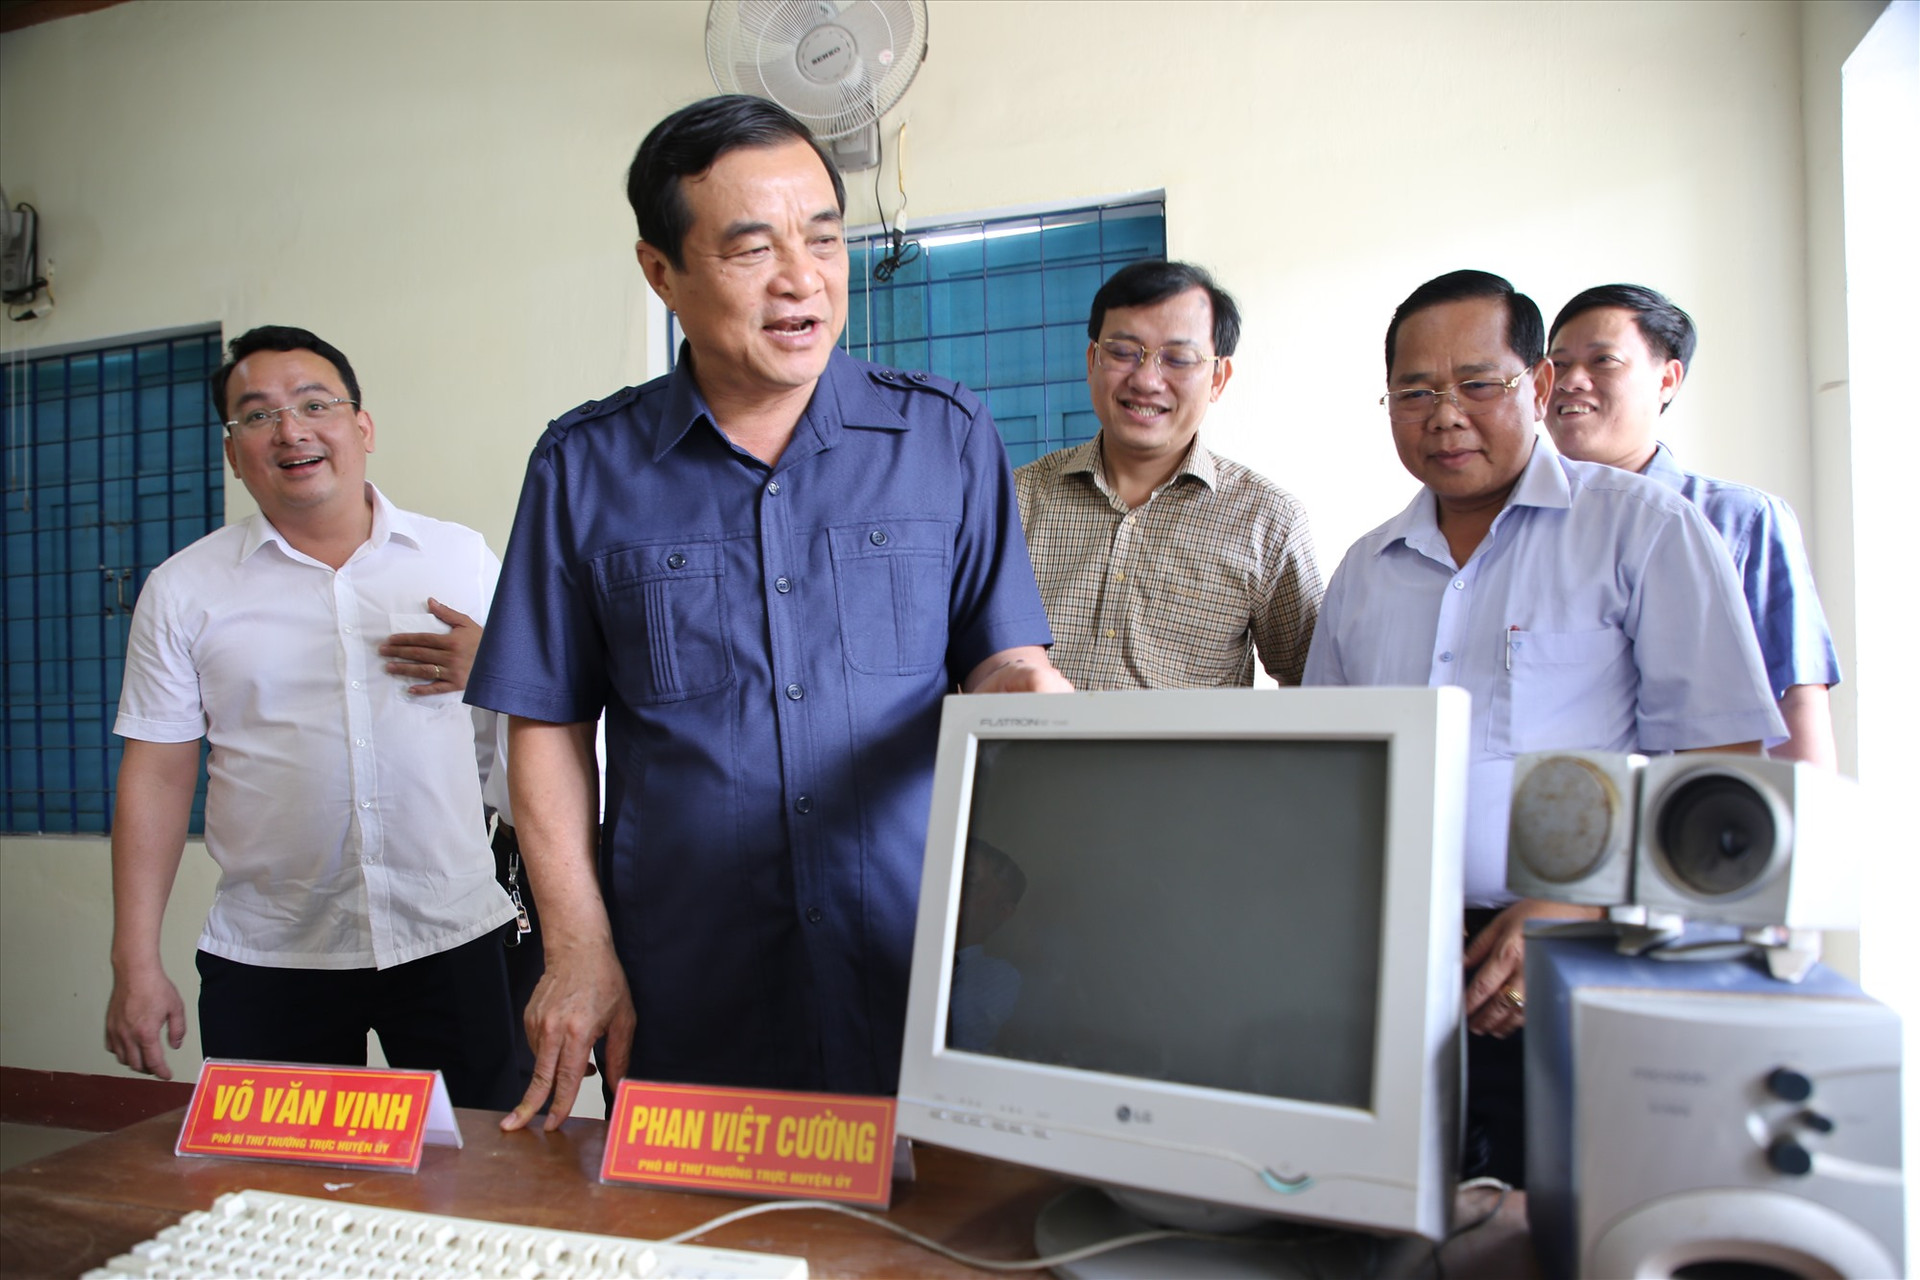 Bí thư Tỉnh ủy Phan Việt Cường xúc động trước bàn làm việc của ông, thời điểm 2004. Ảnh: Đ.N